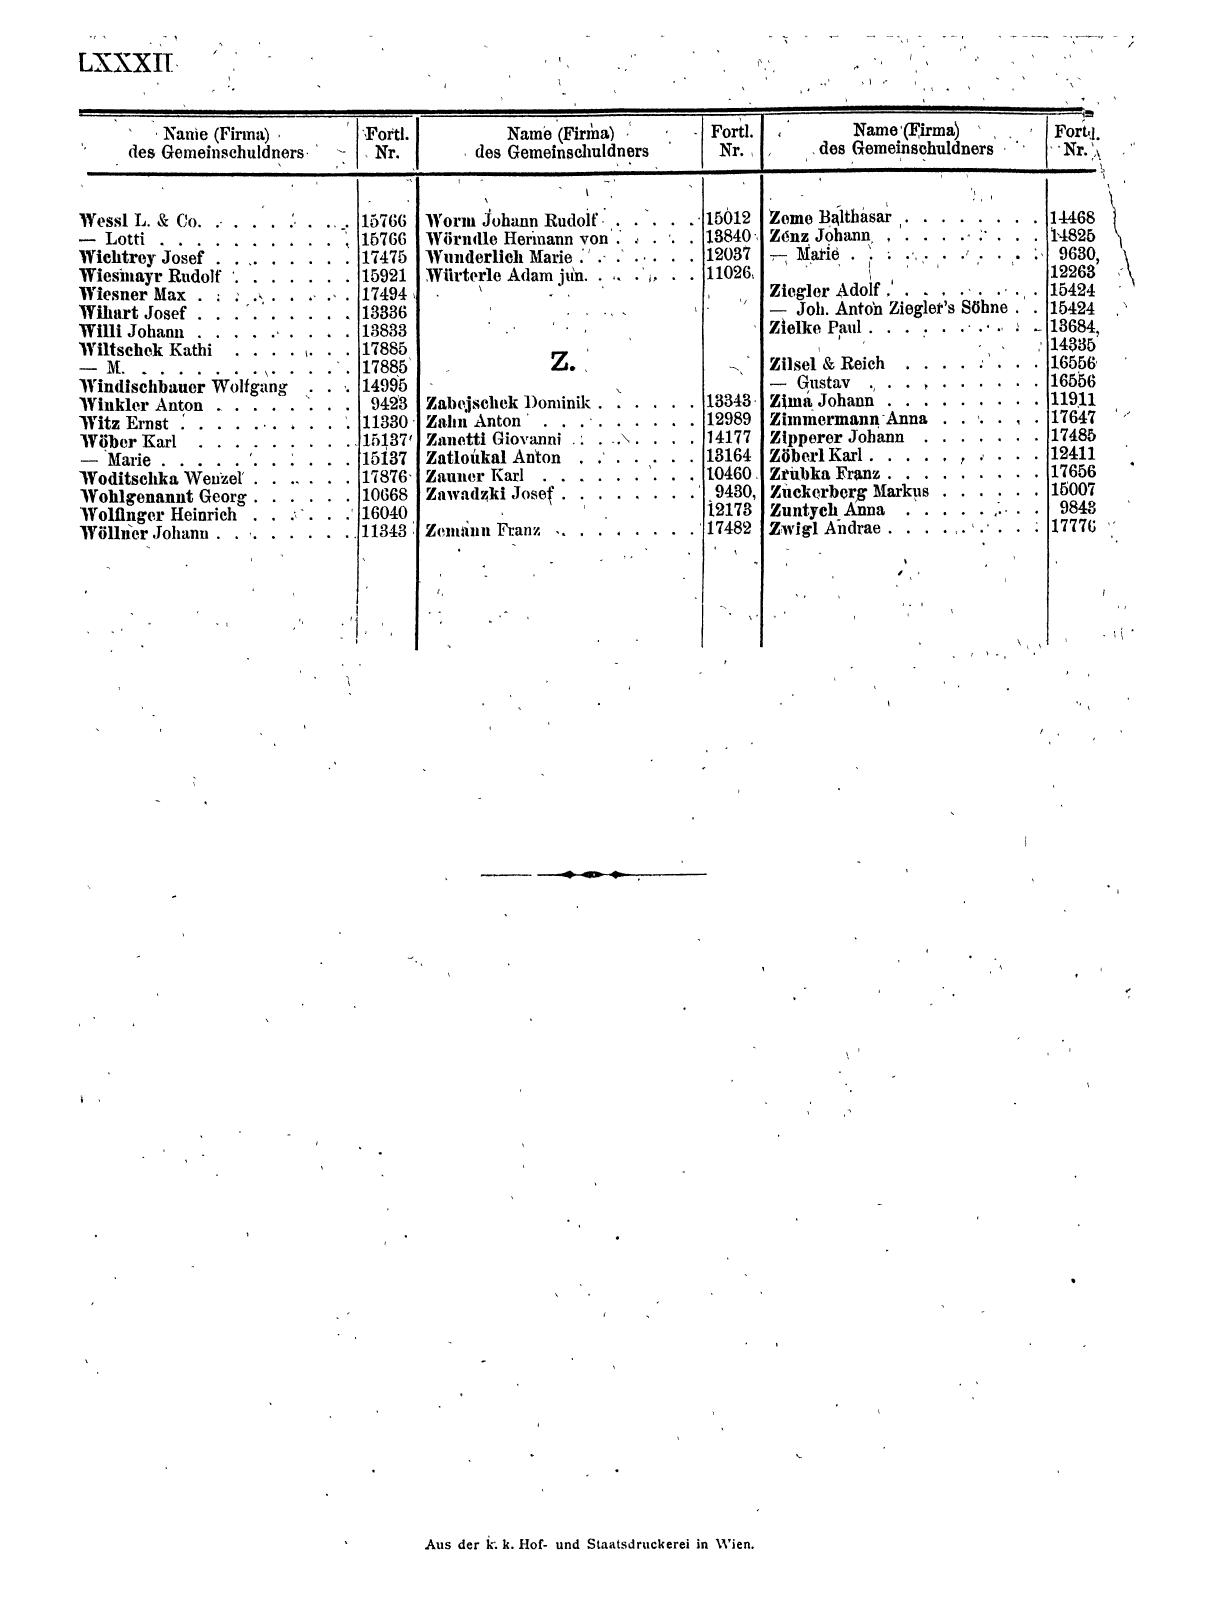 Zentralblatt für die Eintragungen in das Handelsregister 1913, Teil 2 - Seite 86